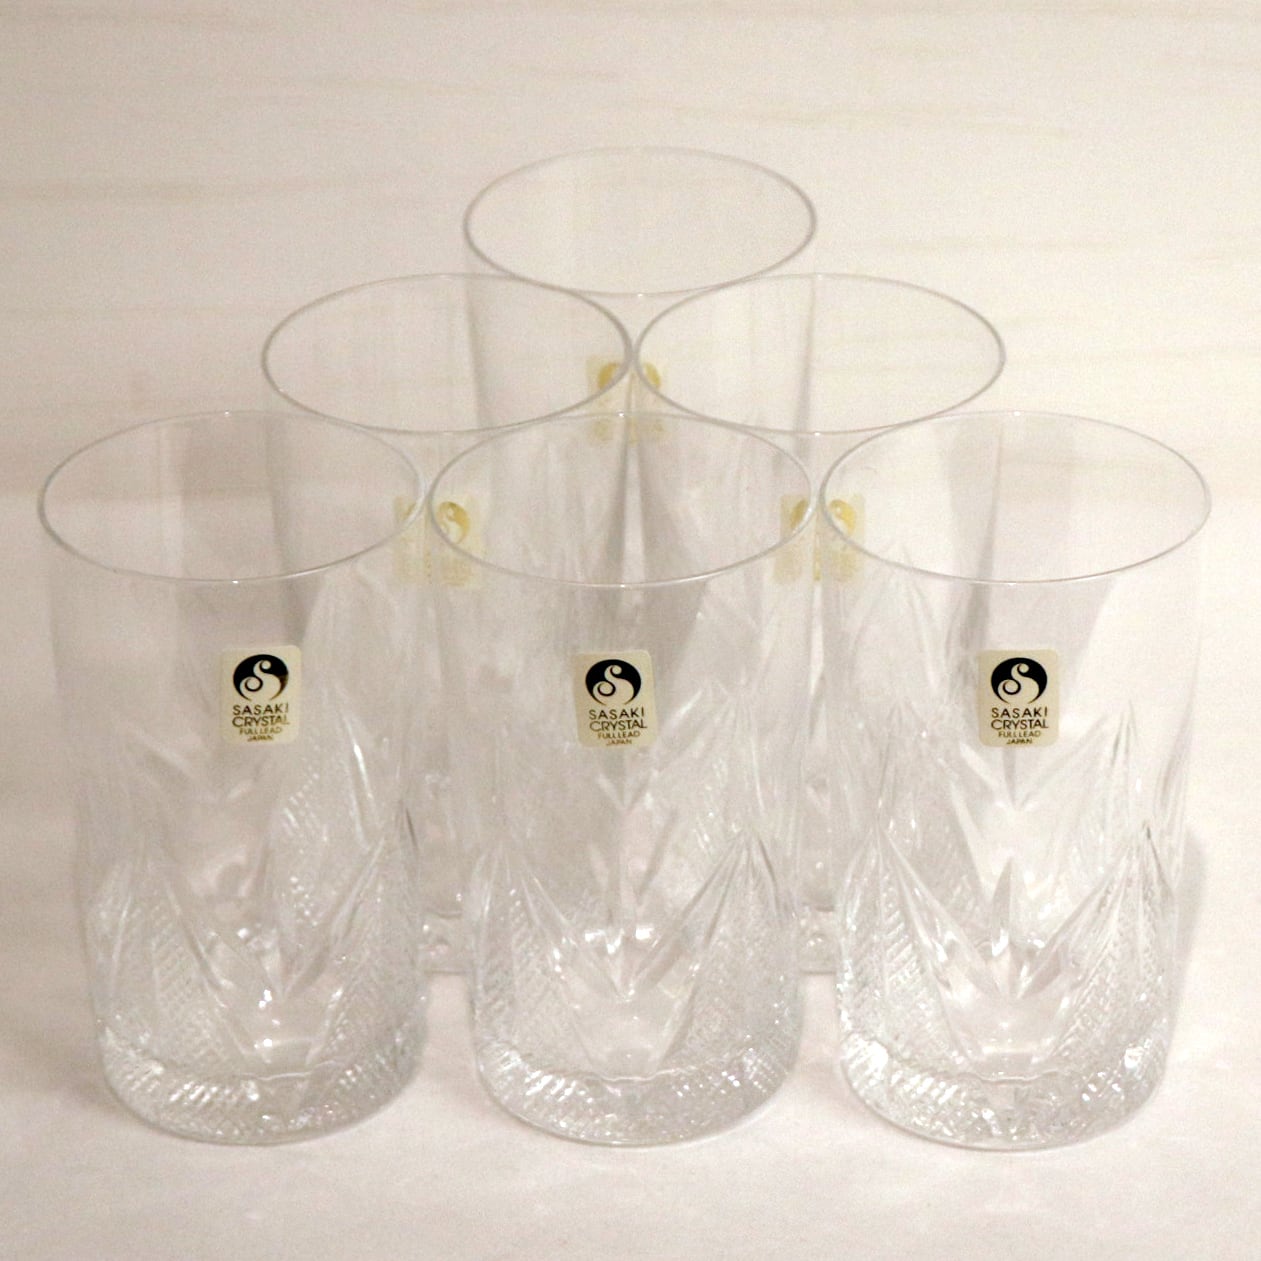 新品未使用 佐々木グラスのクリスタルグラス 12個セット